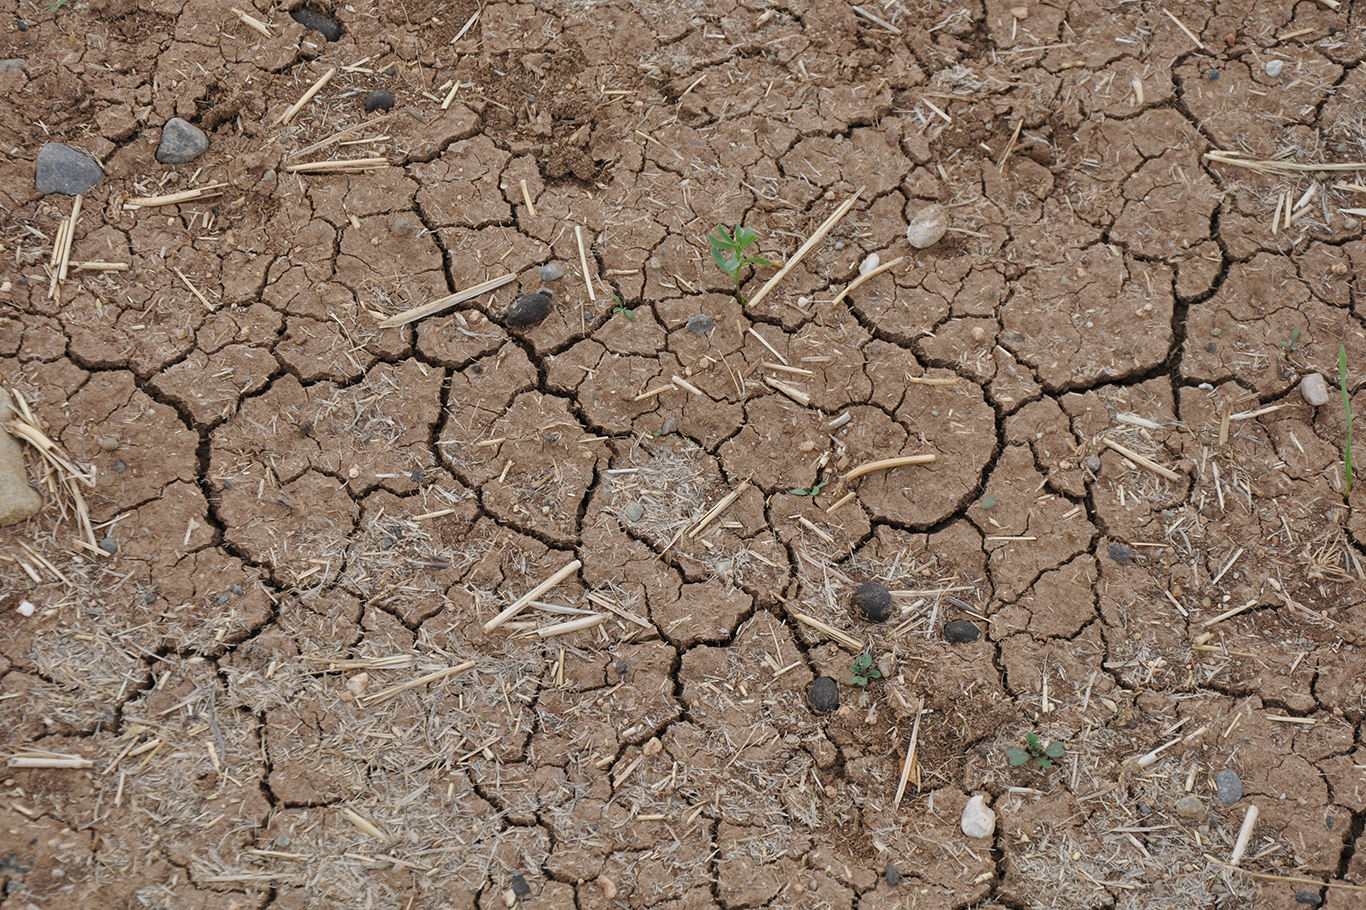 VİDEO HABER - Tarımsal üretimde ciddi bir kuraklık riski var!